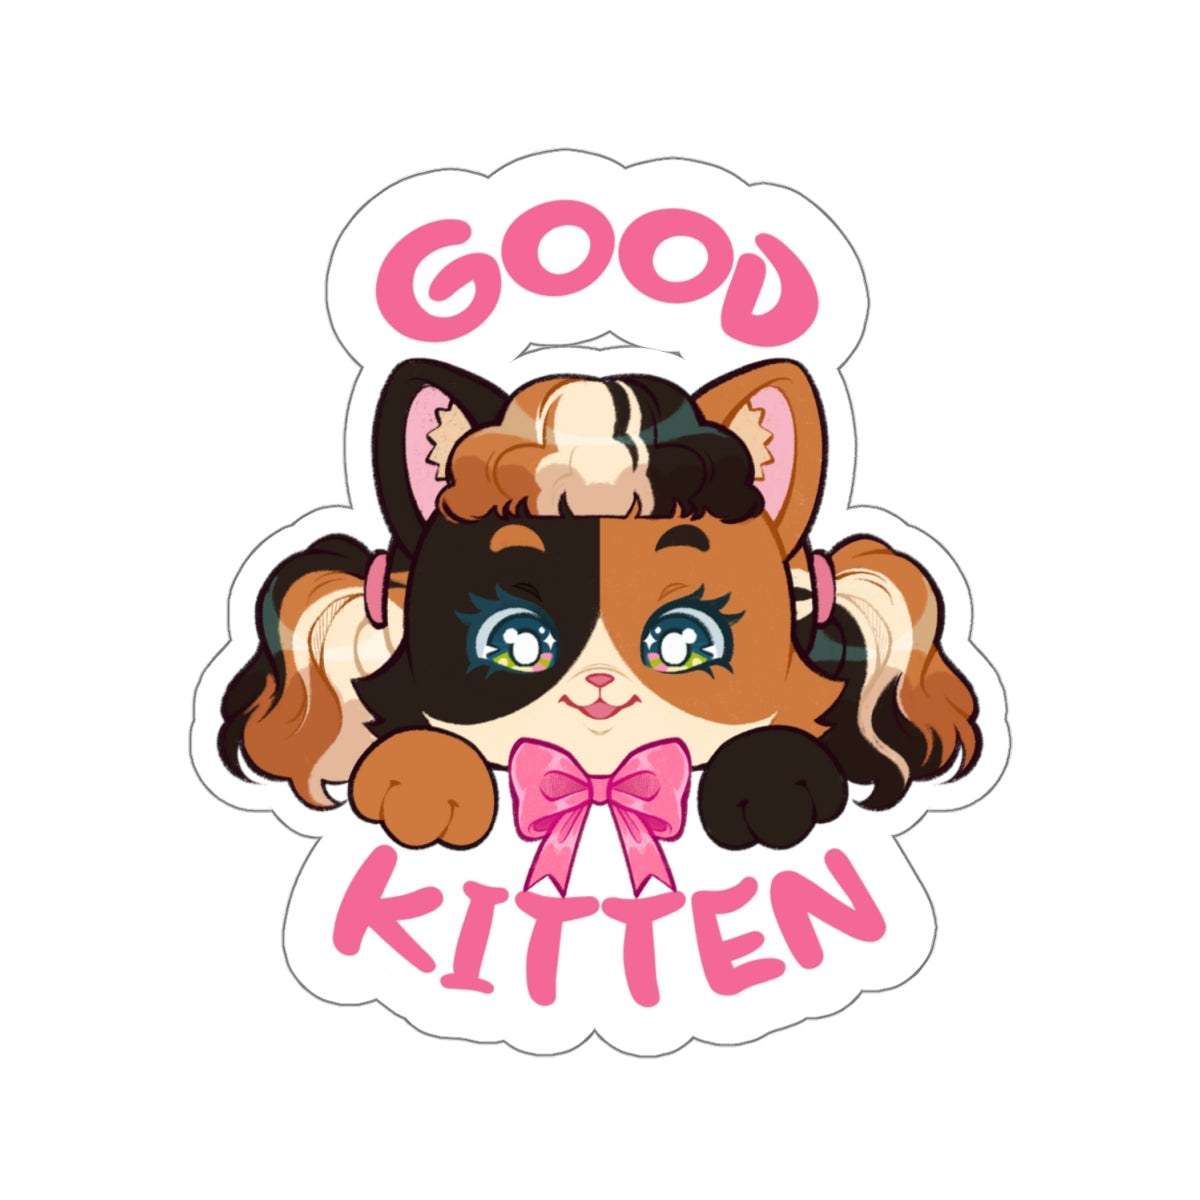 Good Kitten Sticker